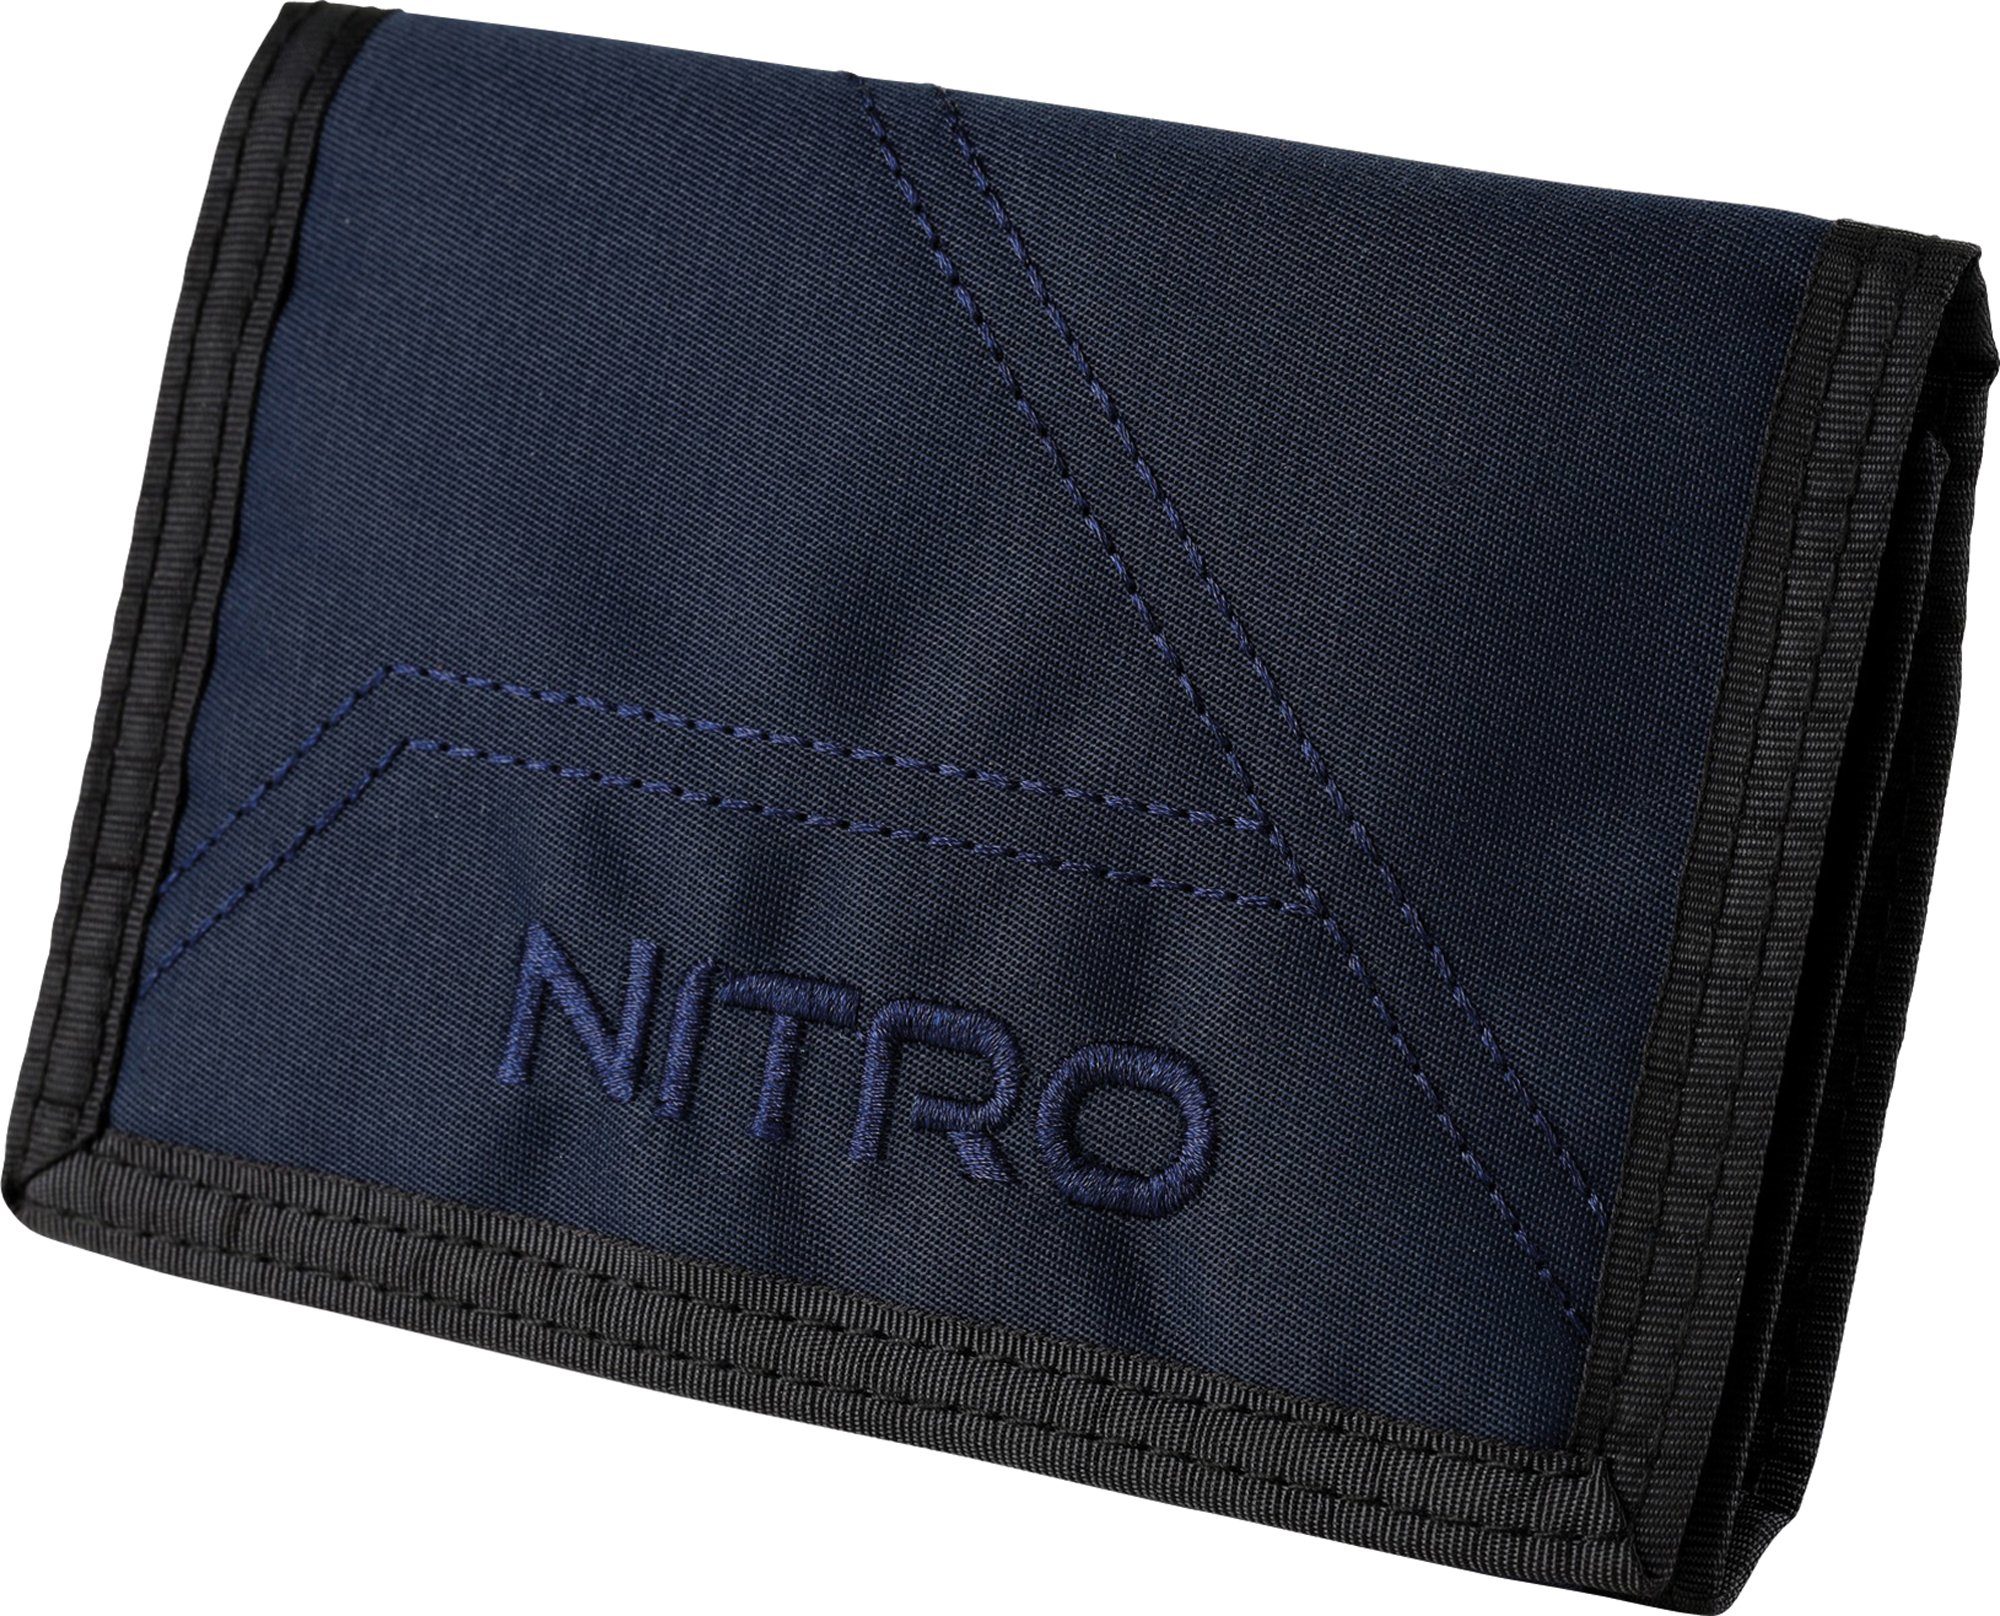 NITRO Geldbörse Wallet, Night Sky, mit Schlüsselring praktischem Night-Sky